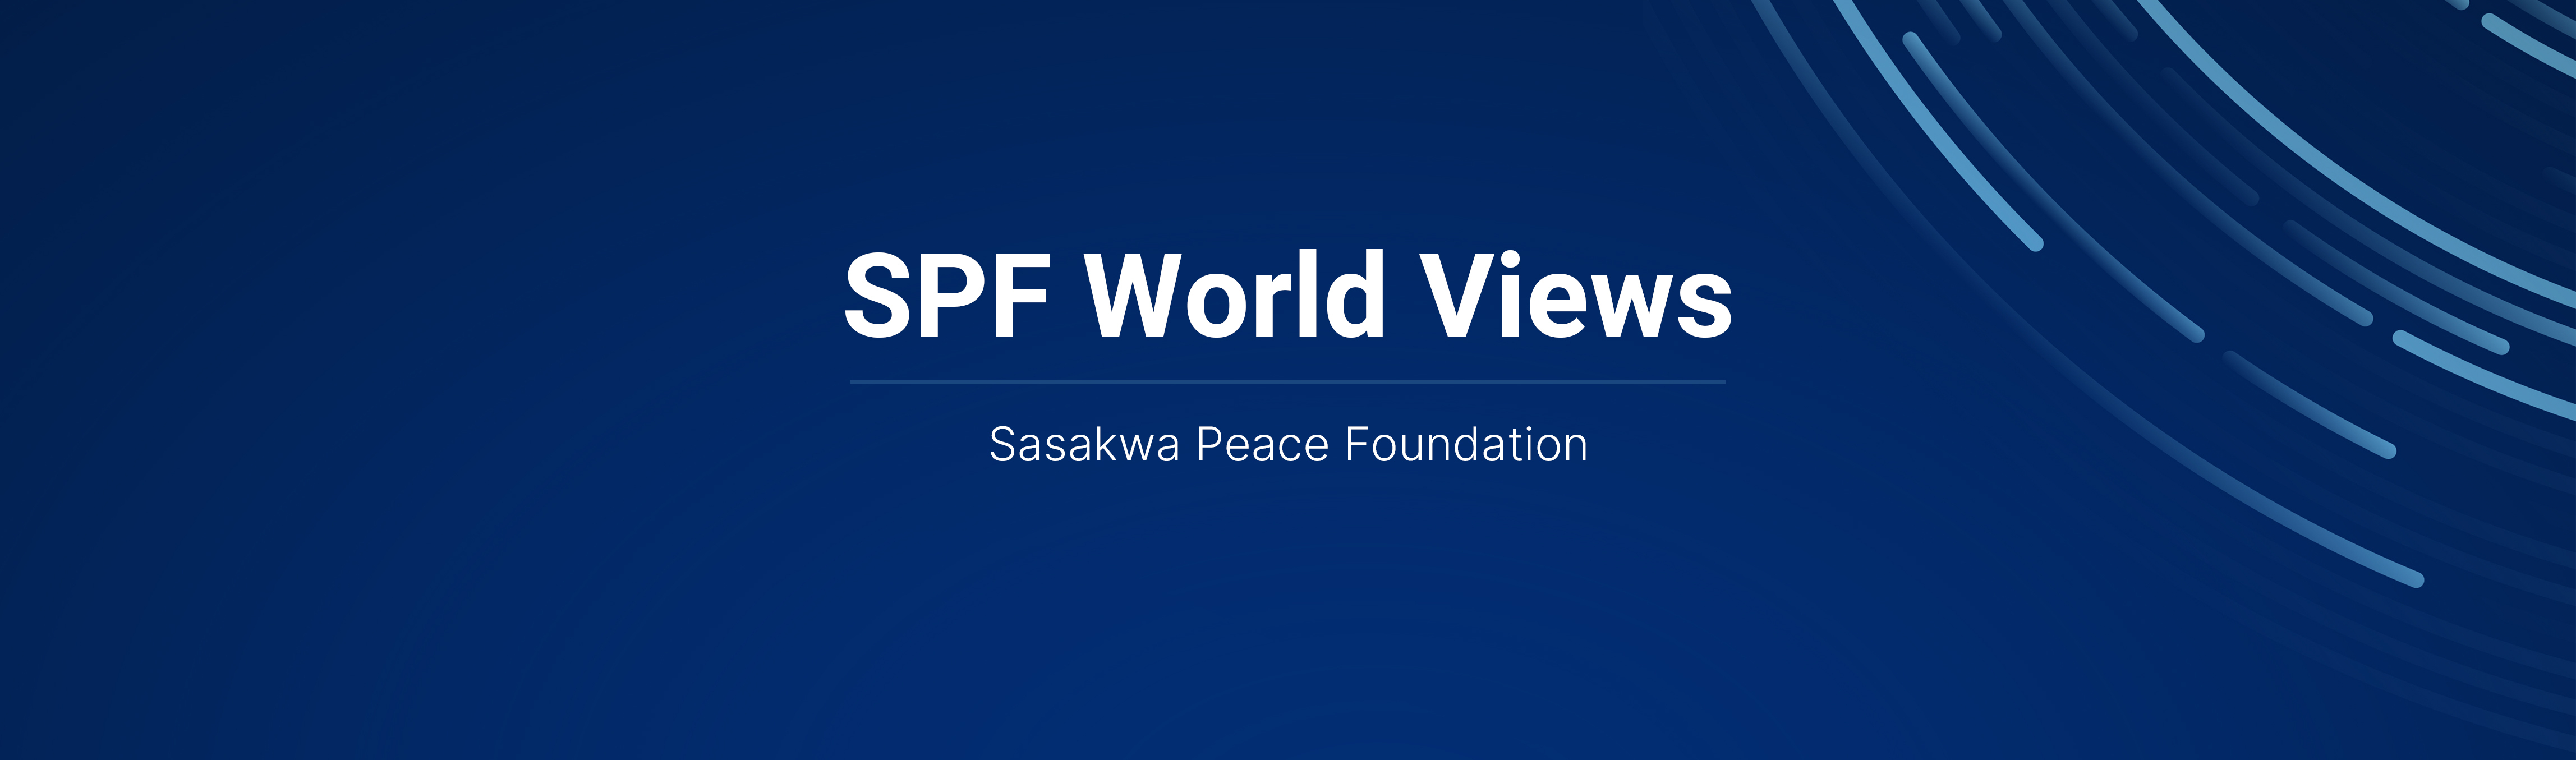 SPF World Views